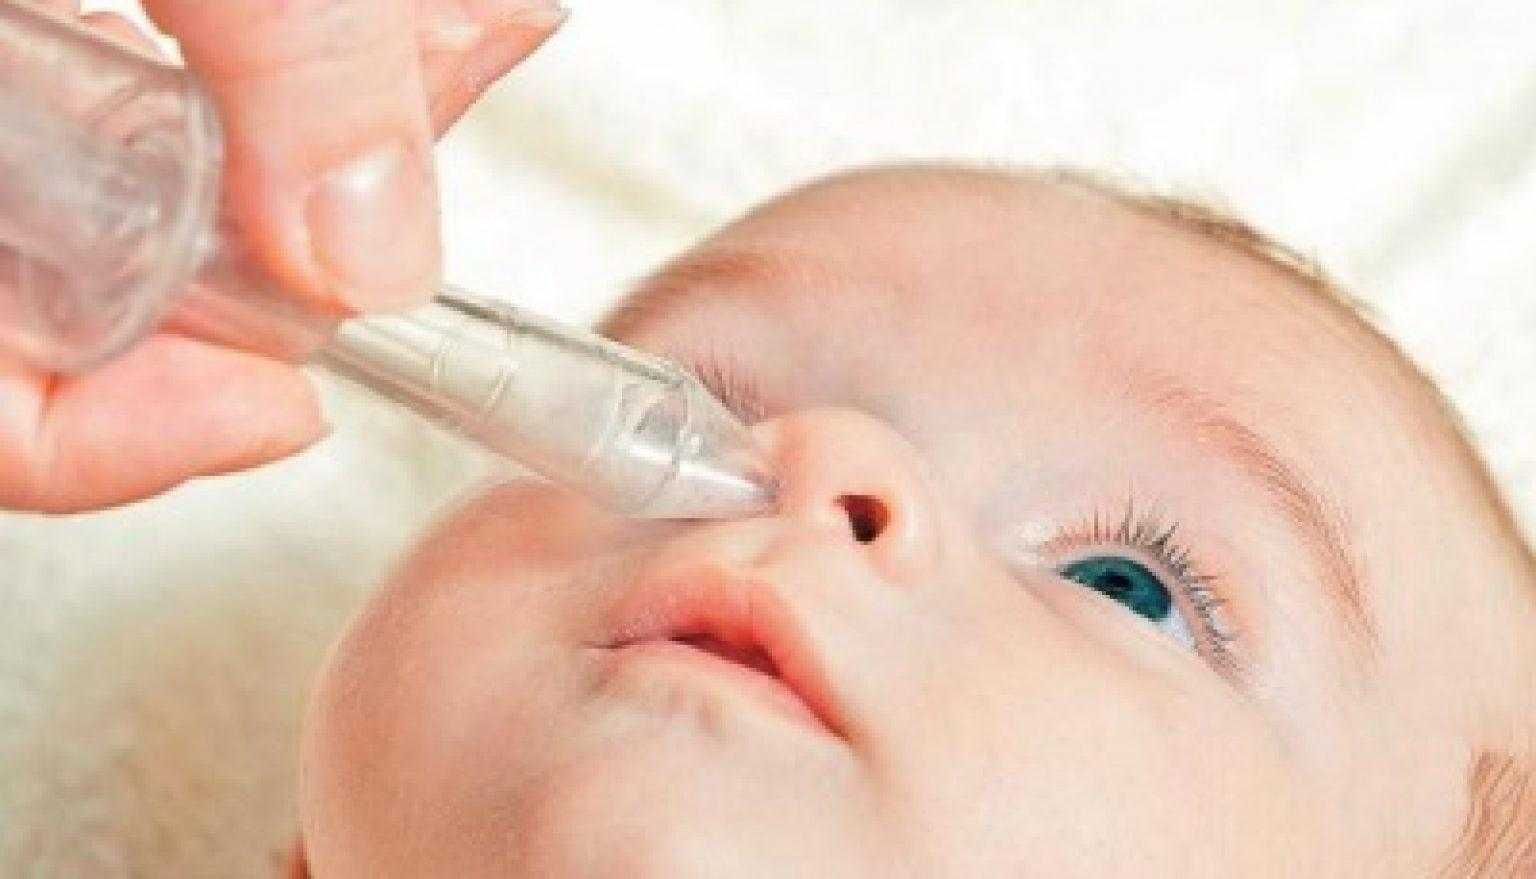 Как и чем почистить нос у новорожденного